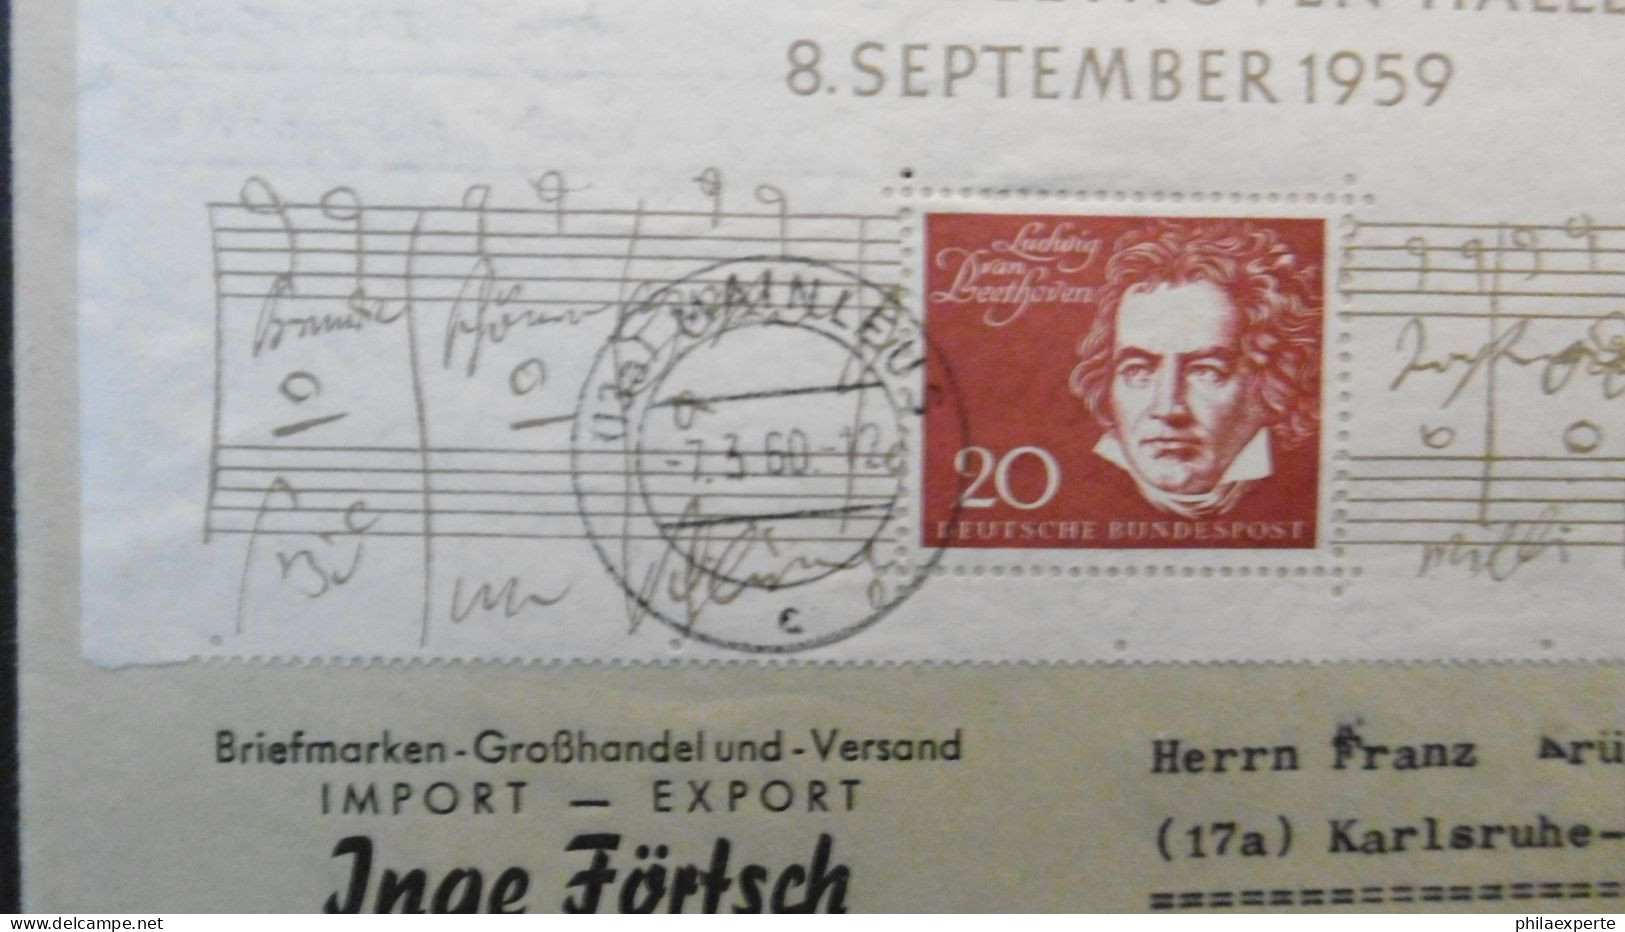 Bund Mi. 317 Mit Blockoberteil Brief Maitens 7.3.1960 Nach Karlsruhe-dekorativ-Mi. 75.-€ - Covers & Documents